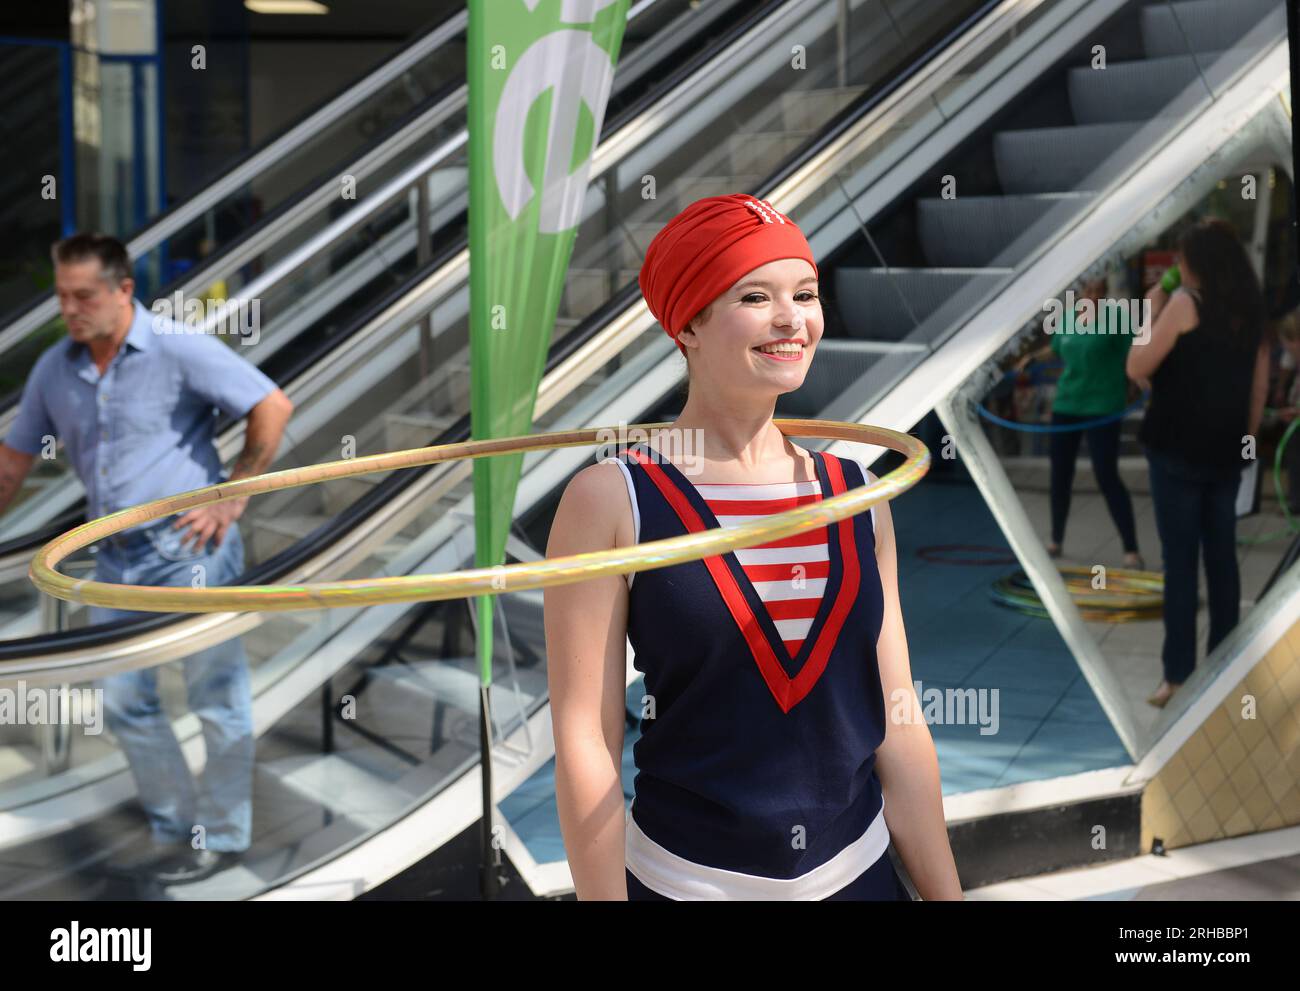 Artisti hula hoop che si esibiscono al centro commerciale Britain, Regno Unito Foto Stock